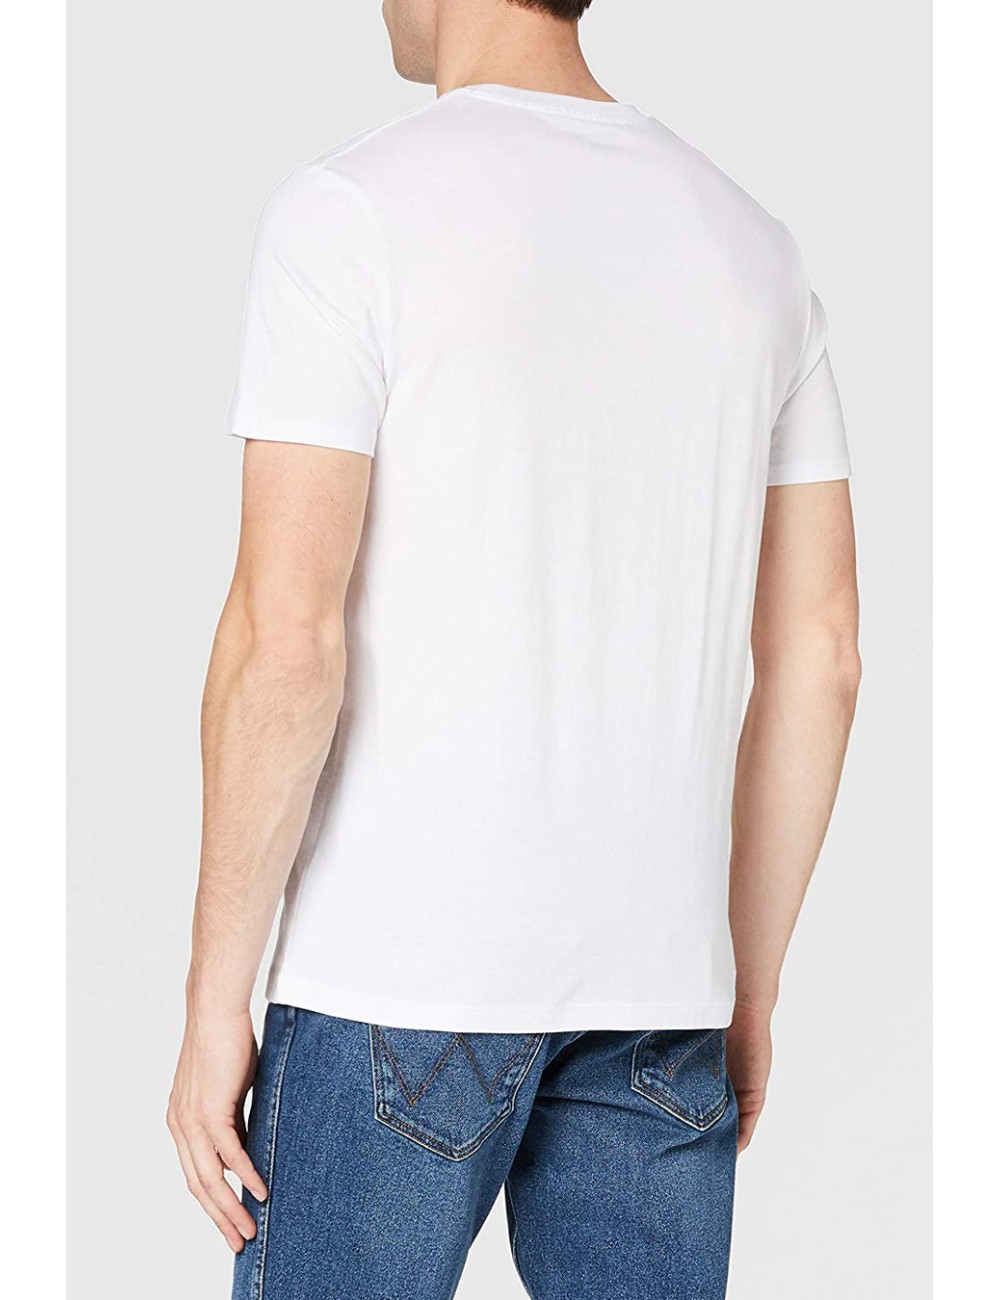 Wrangler SS Jeans Team Tee White T -Shirt